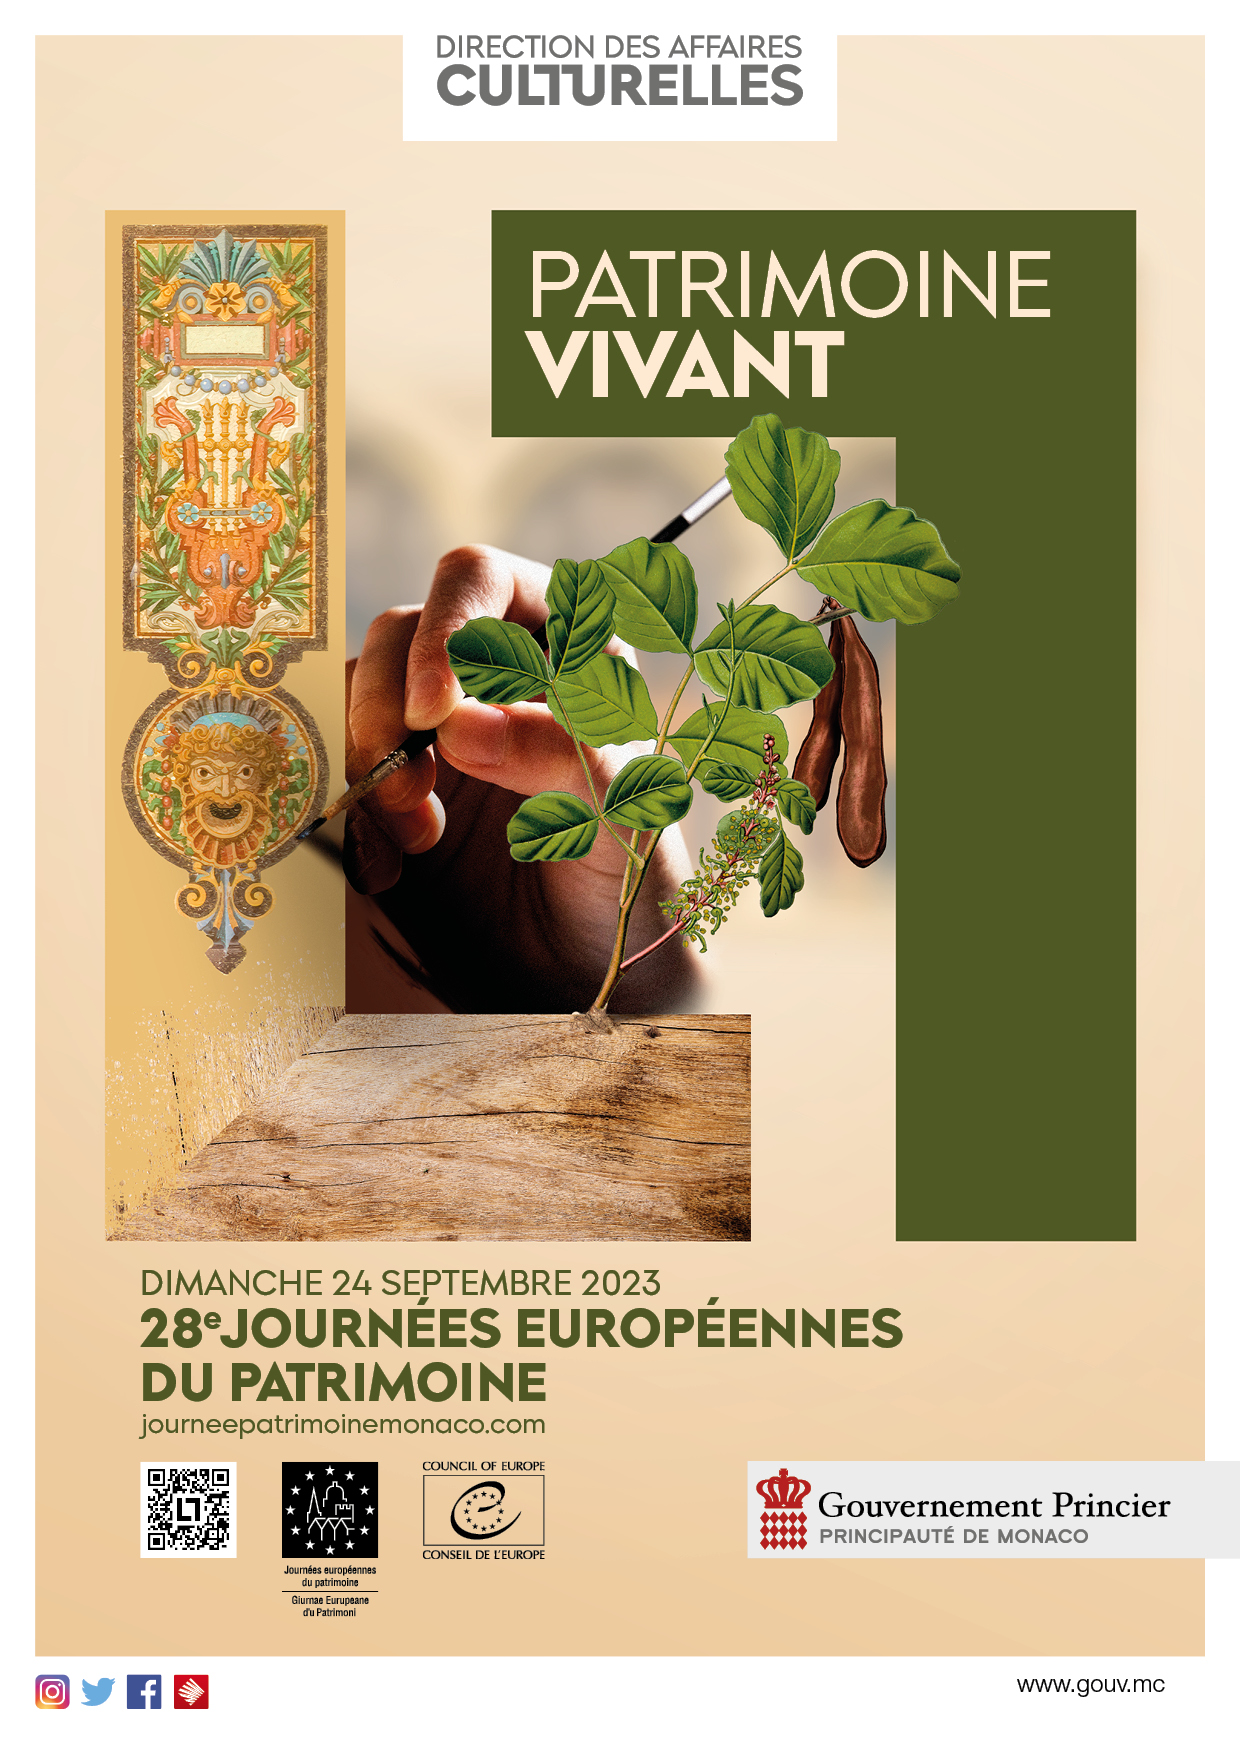 La Francis Bacon MB Art Foundation renouvelle sa participation aux « Journées Européennes du Patrimoine » à Monaco